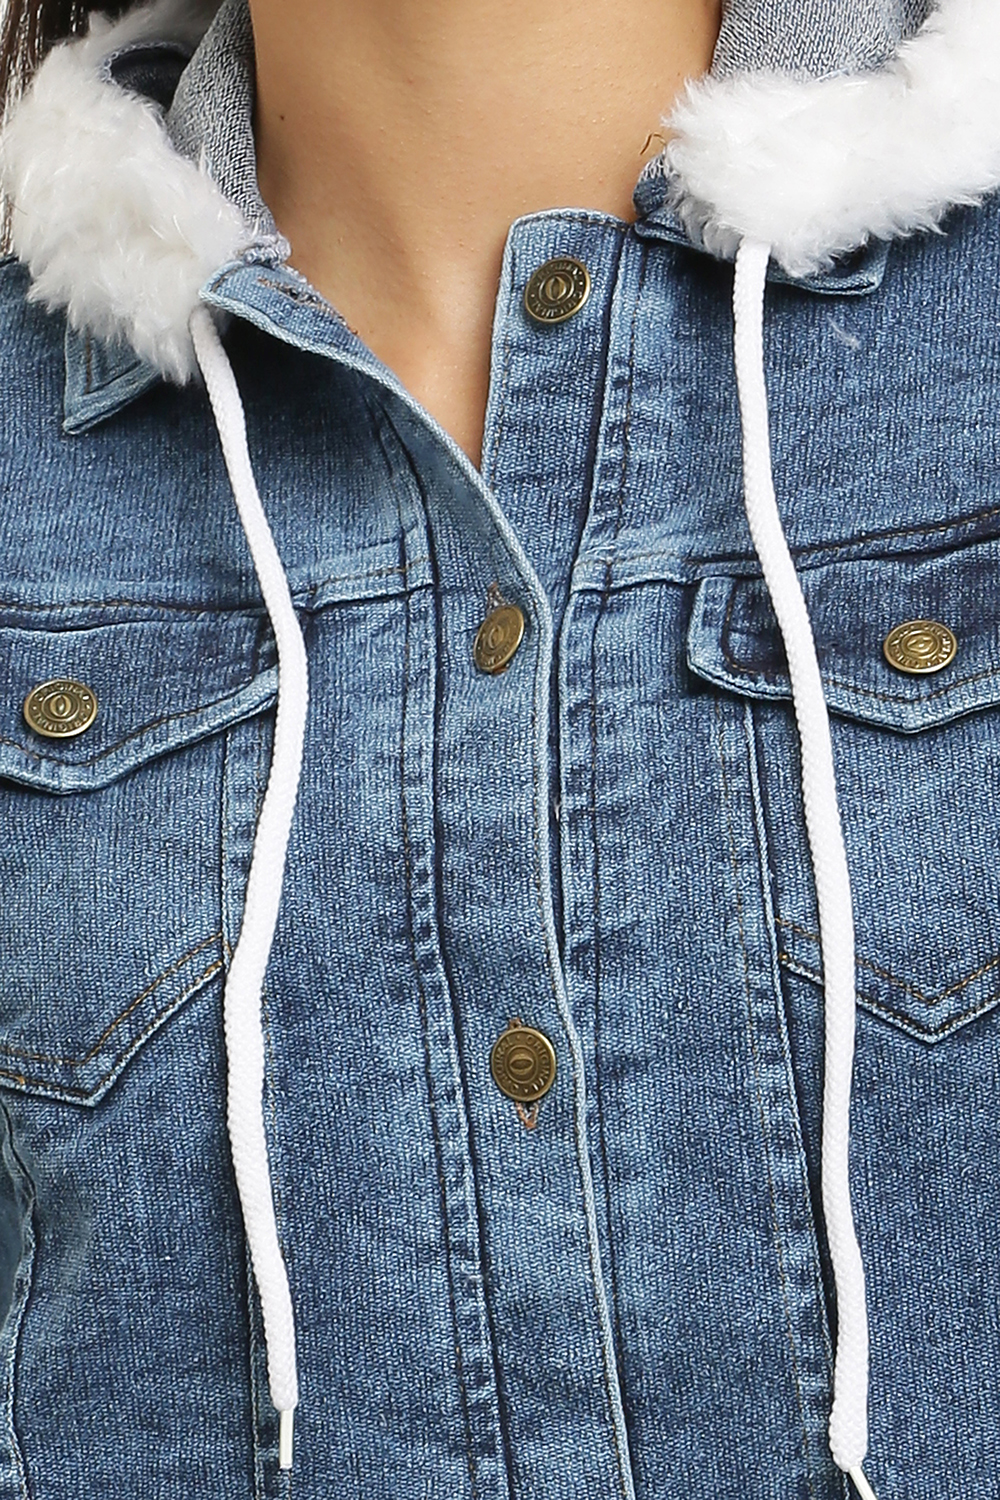 Belie Women Lined Winter Fur Hooded Denim Jacket Coat Outwear 3 XL :  Amazon.in: Clothing & Accessories